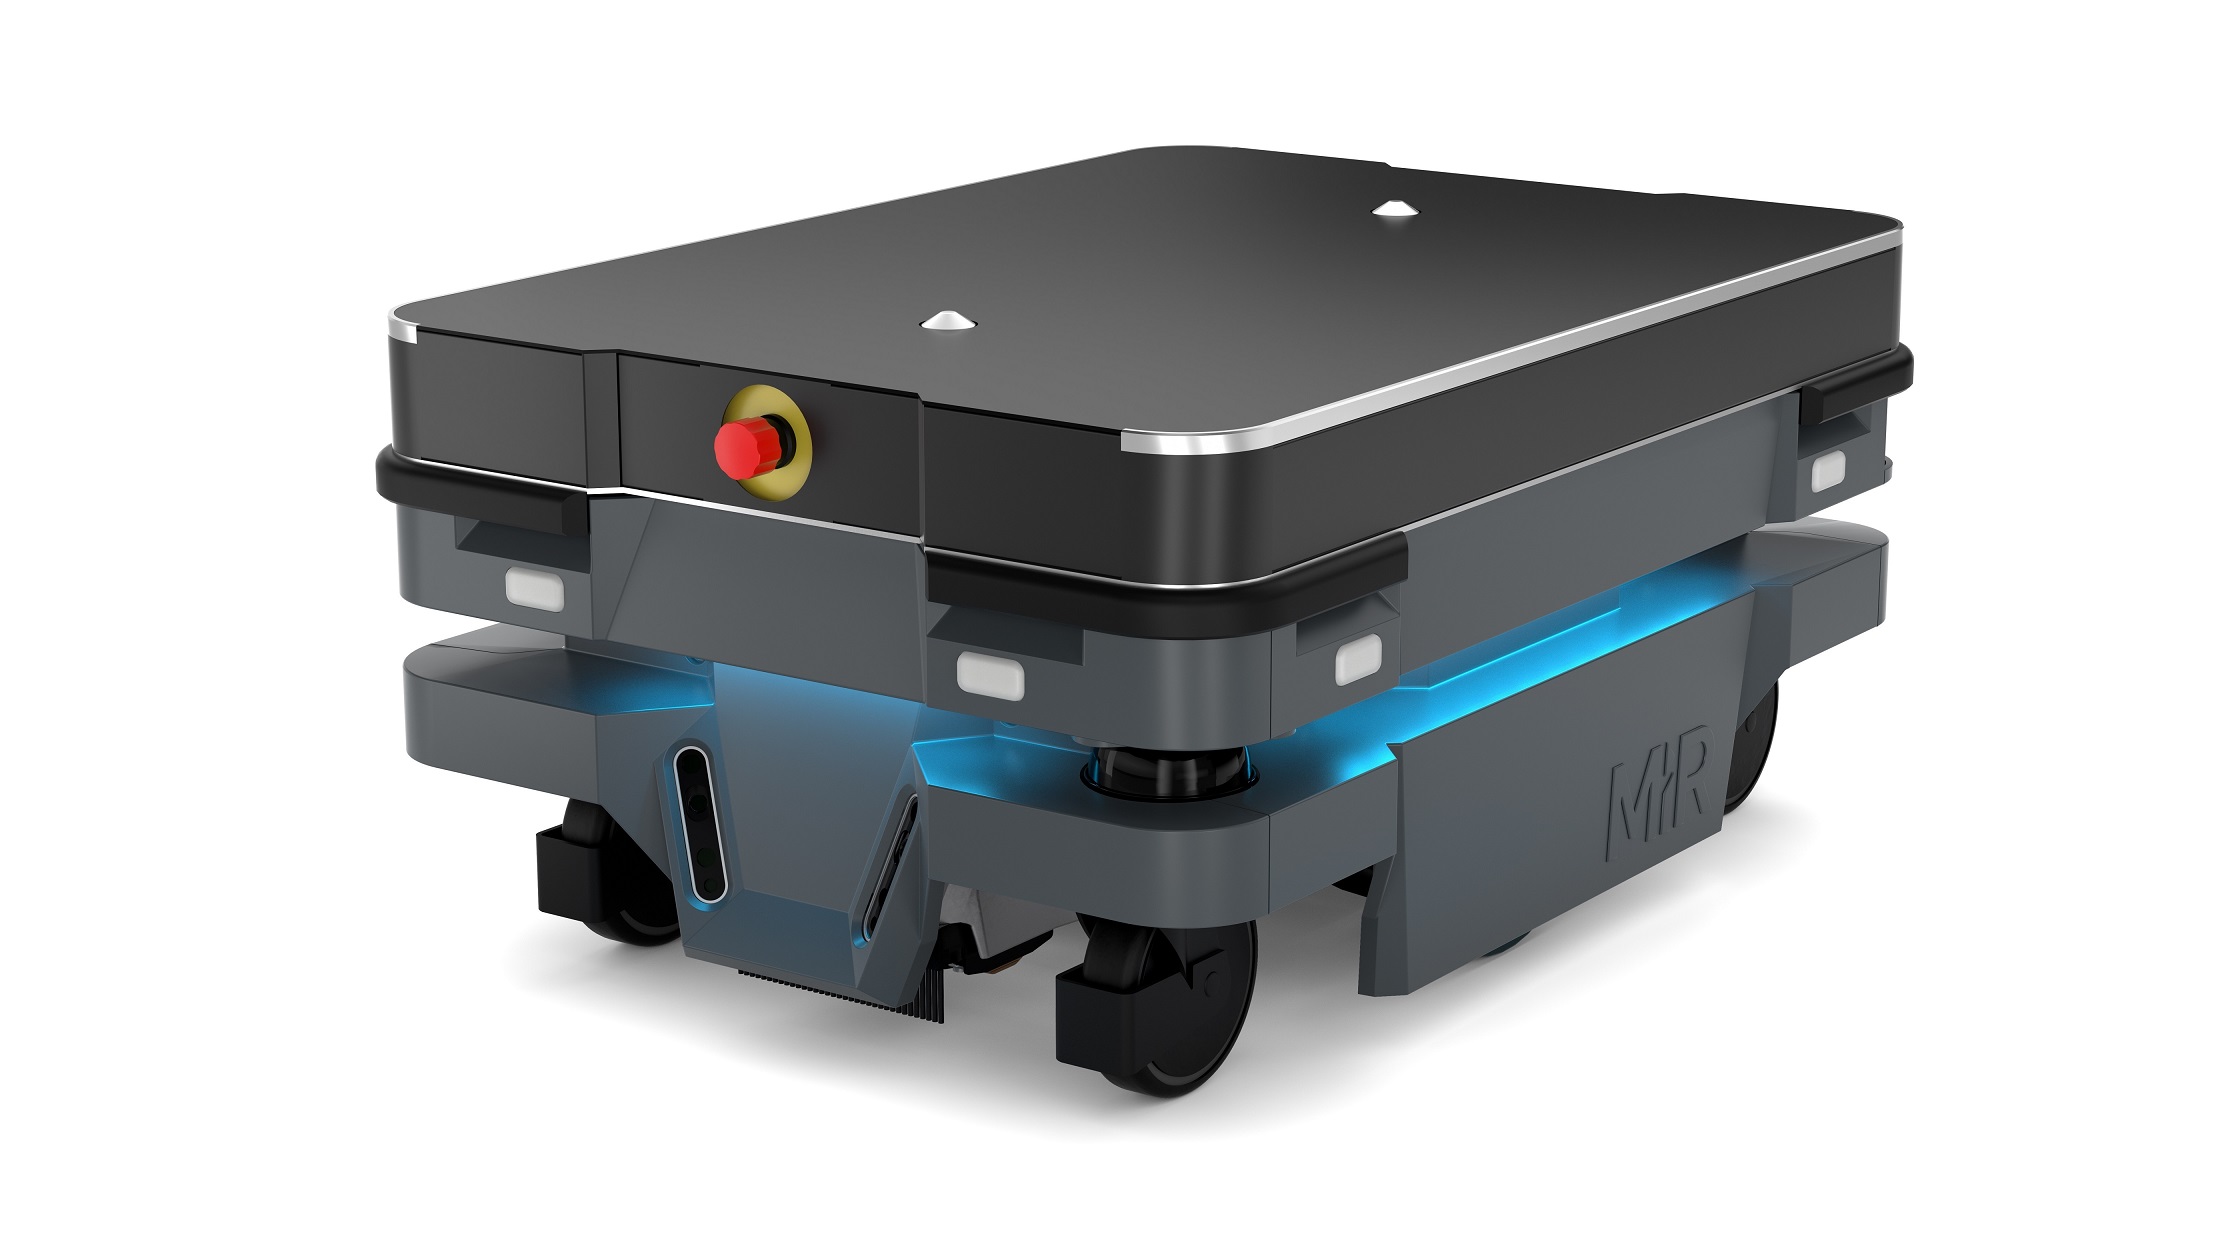 Mir250 Brings About New Era In Autonomous Mobile Robots